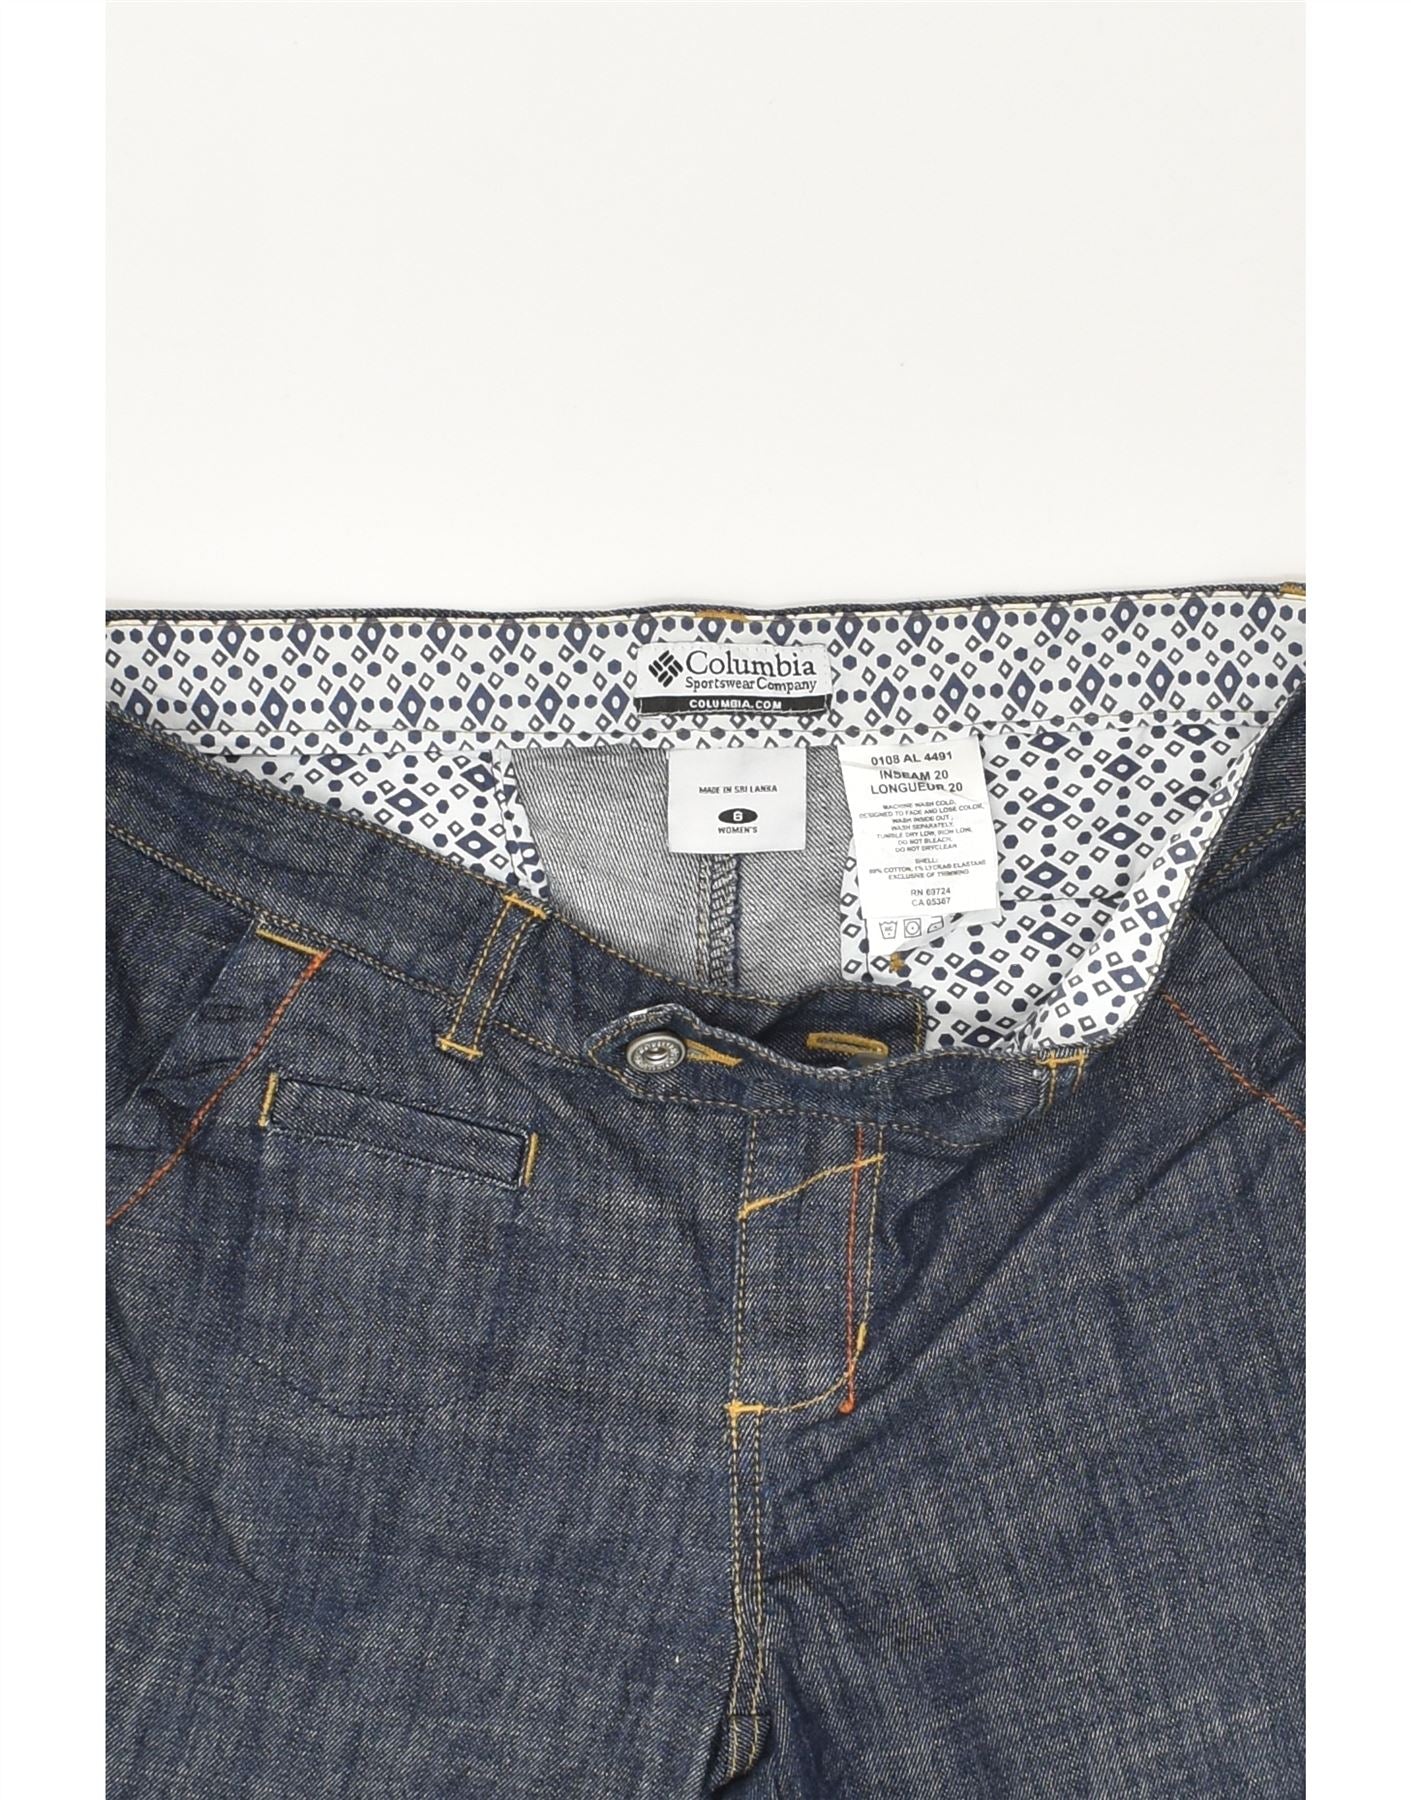 Calvin Klein Jeans Women's Gray Straight Pants Size W29 L30 RN